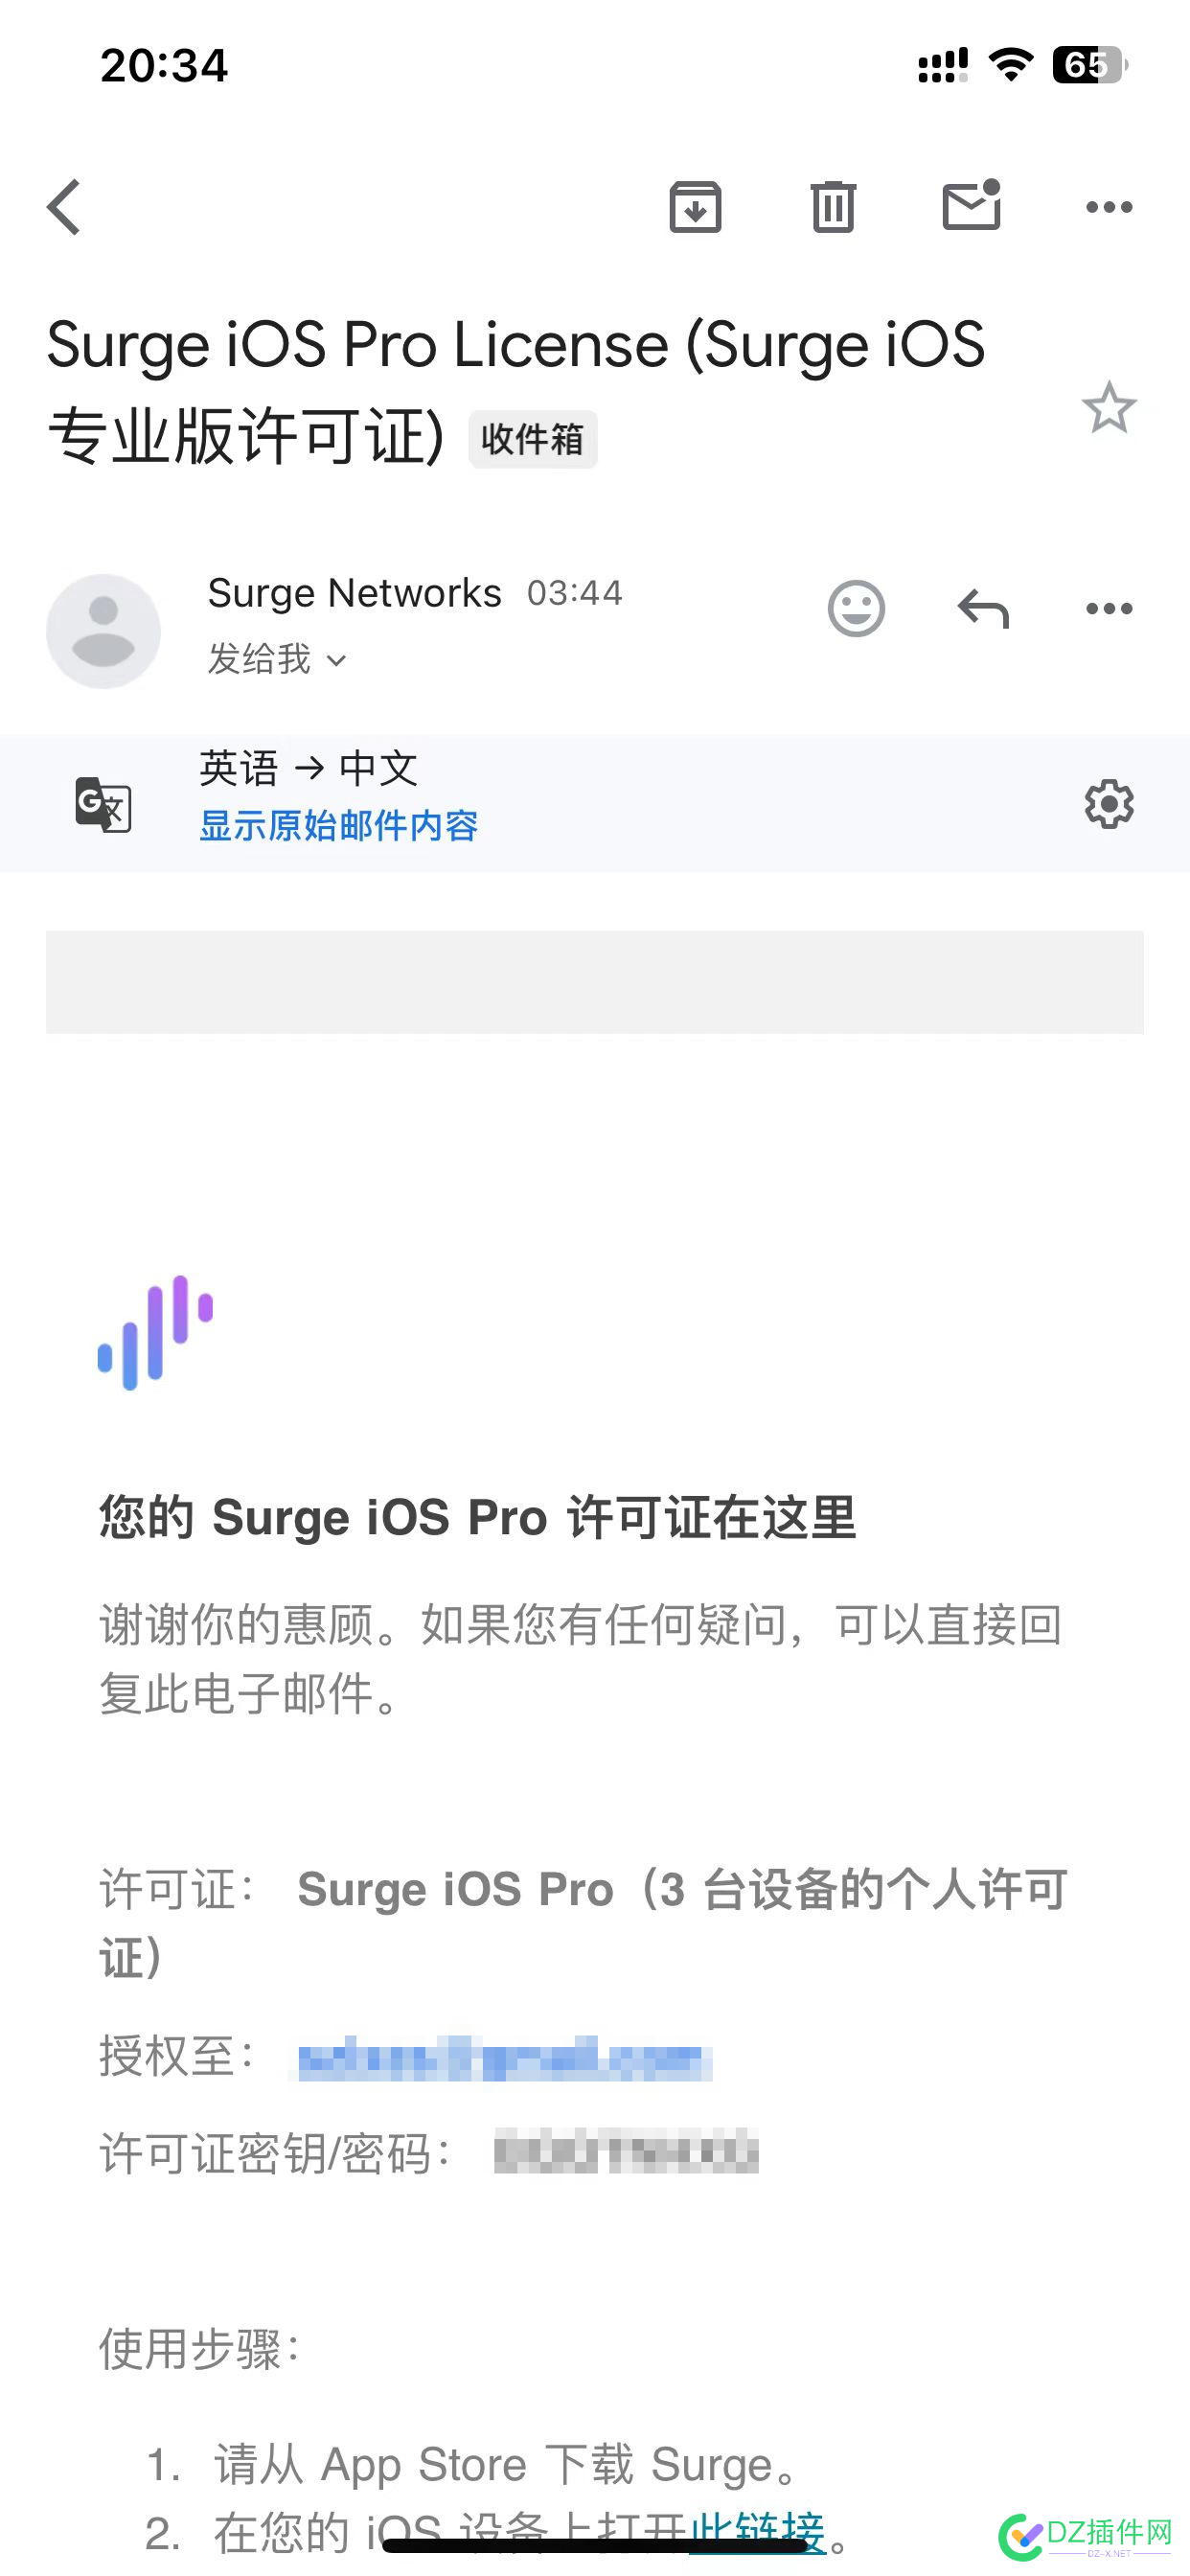 【拼车】Surge iOS 合租 拼车,TG,SurgeiOS,110,6日